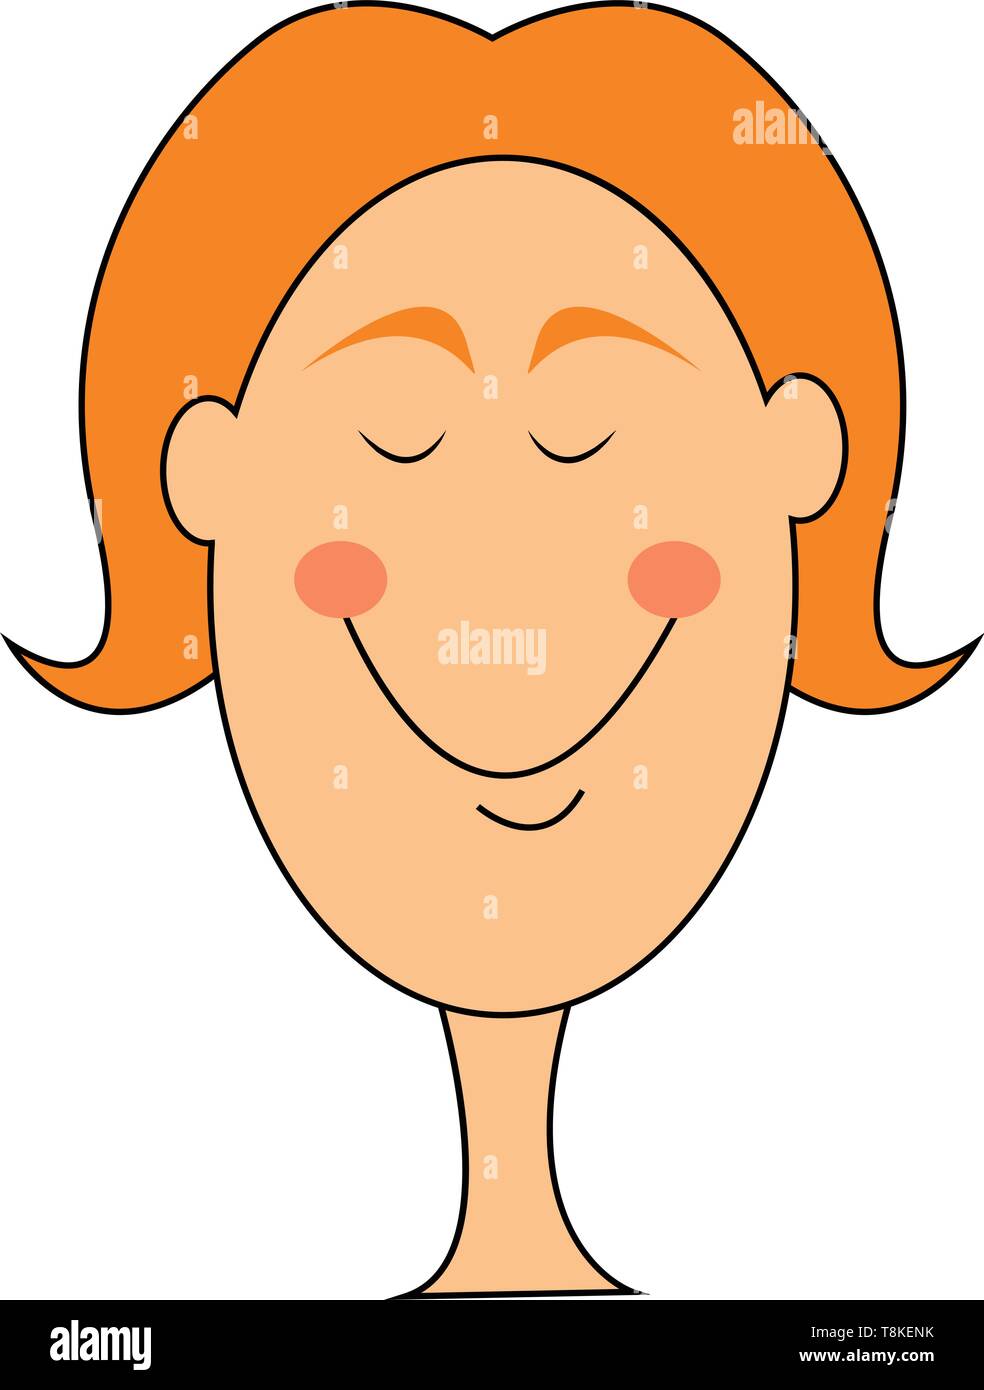 Cartoon foto di una donna sorridente con gli occhi chiusi ha un sorriso chiusa ruotando fino alla guancia, il vettore, il colore di disegno o illustrazione. Illustrazione Vettoriale